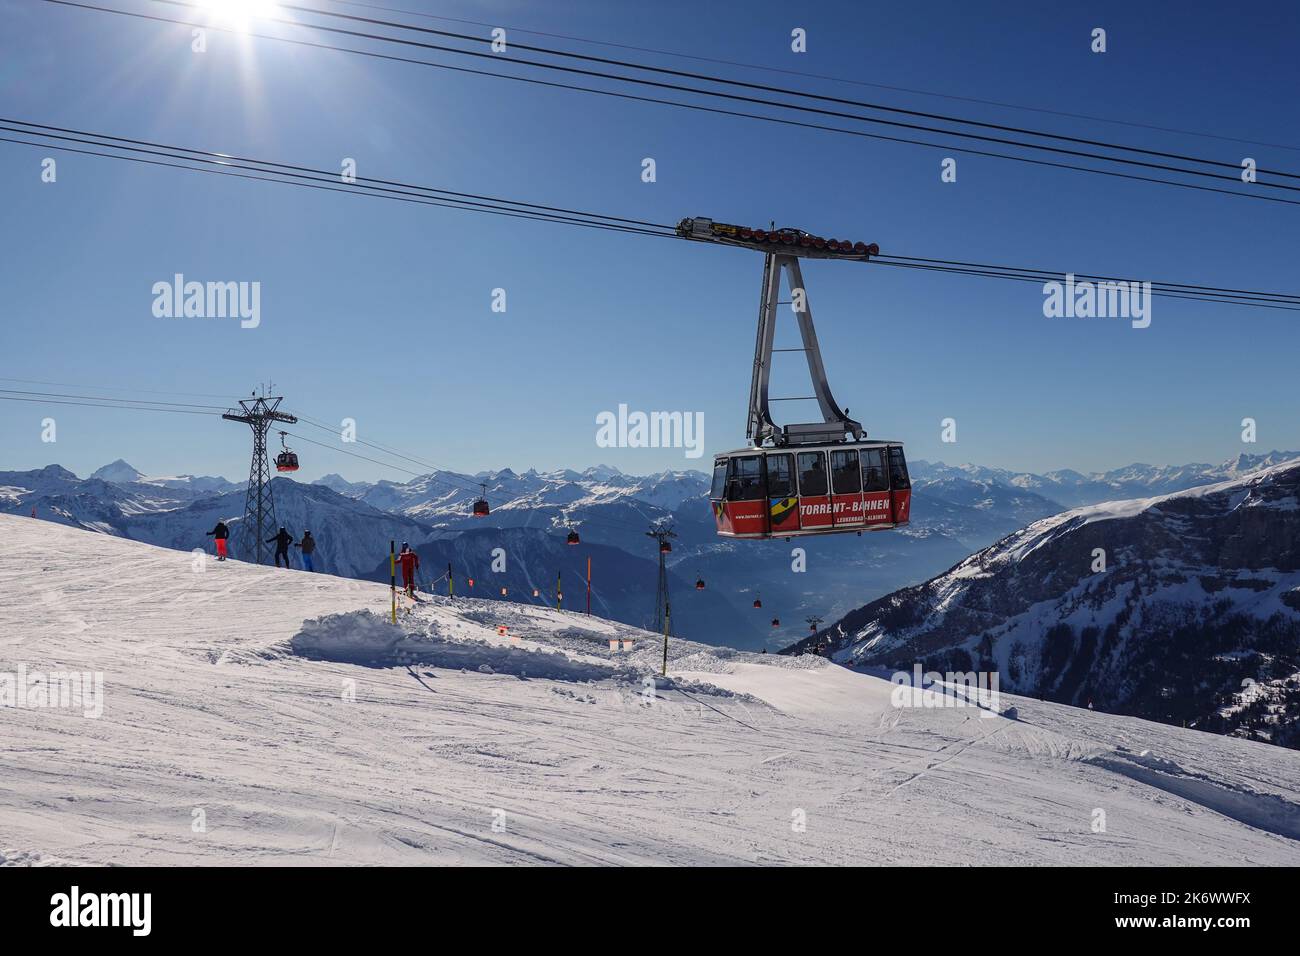 Leukerbad, Suisse - 12 février 2022 : le téléphérique du torrent Bahnen atteint son terminal dans la station de ski de Leukerbad, dans les alpes suisses, sur une période ensoleillée Banque D'Images